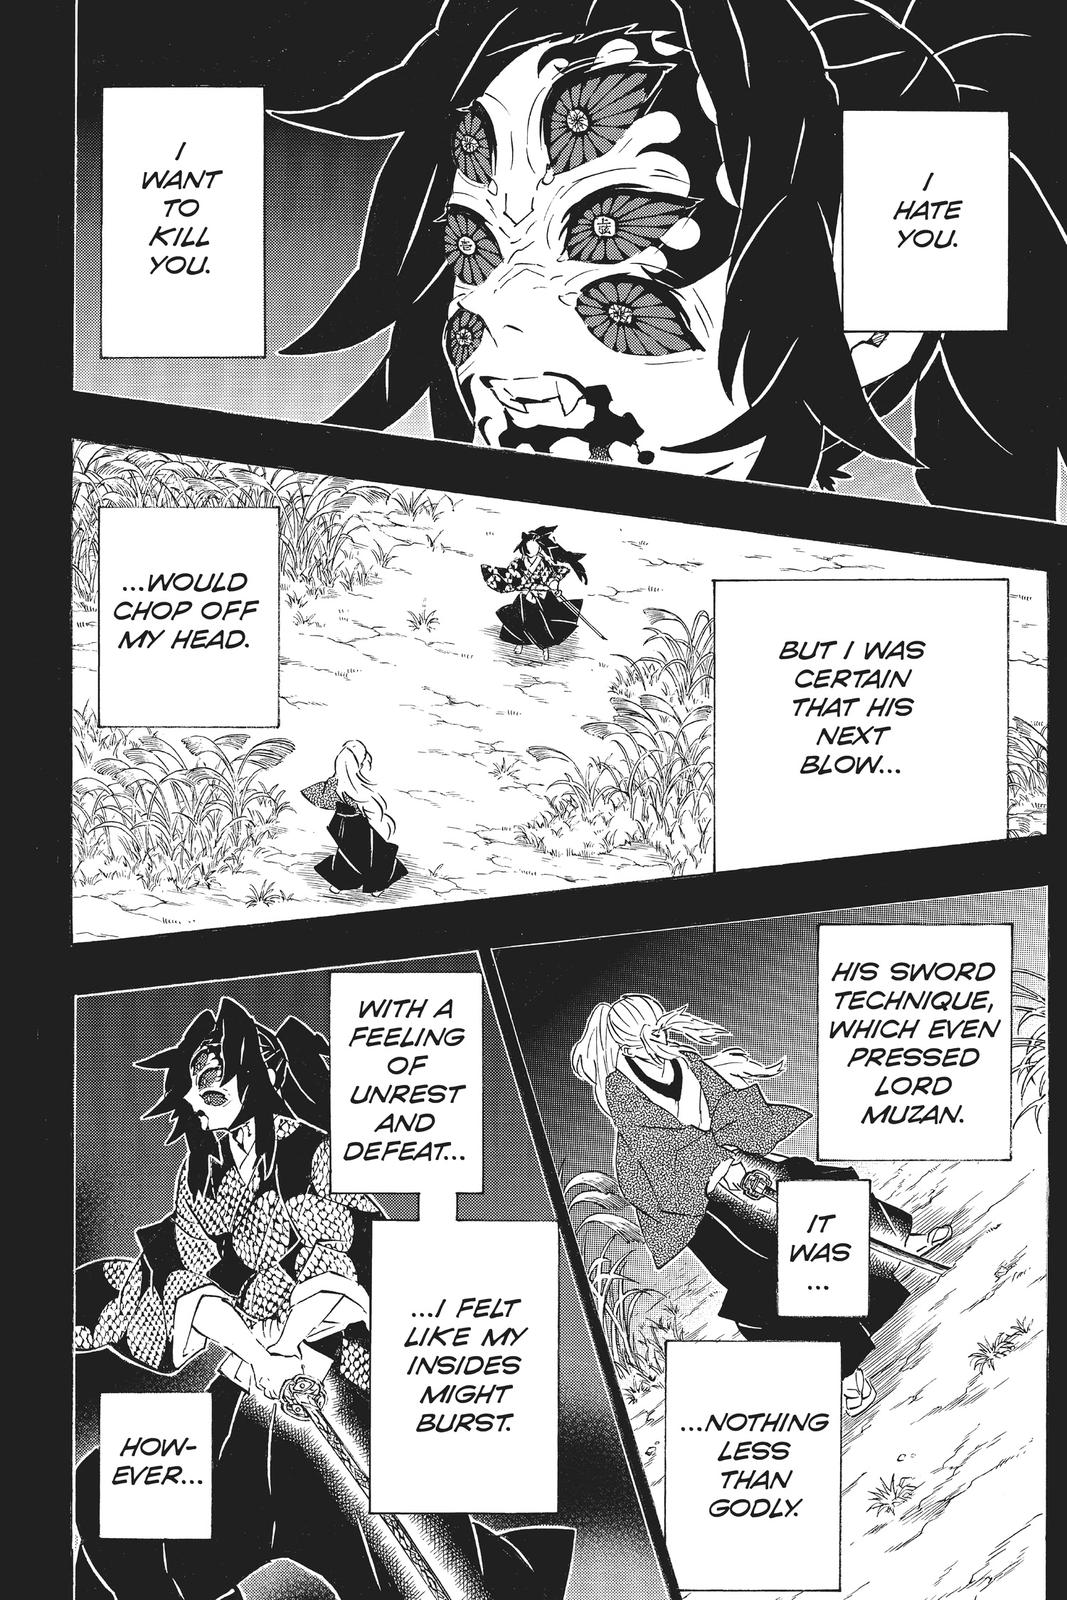 Demon Slayer Manga Manga Chapter - 174 - image 8